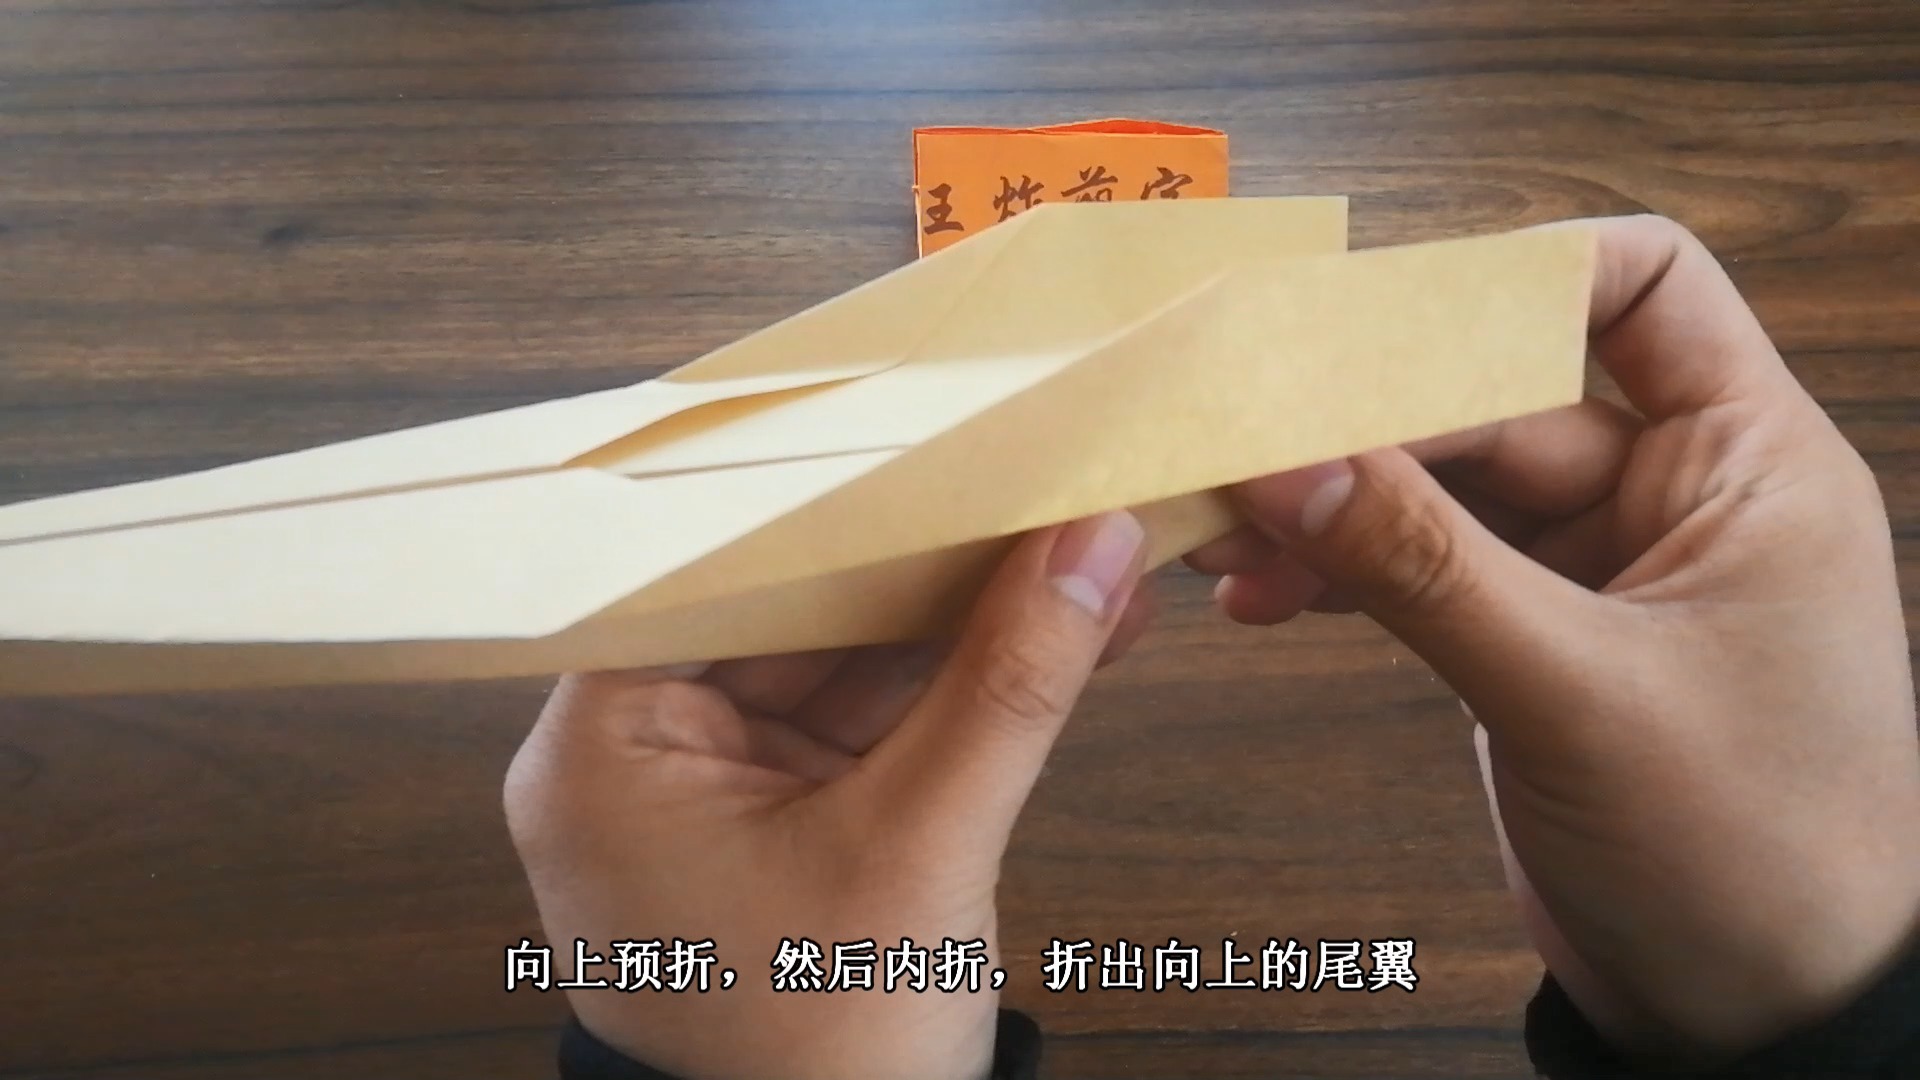 [播放纸飞机的视频]播放纸飞机视频记录的照片